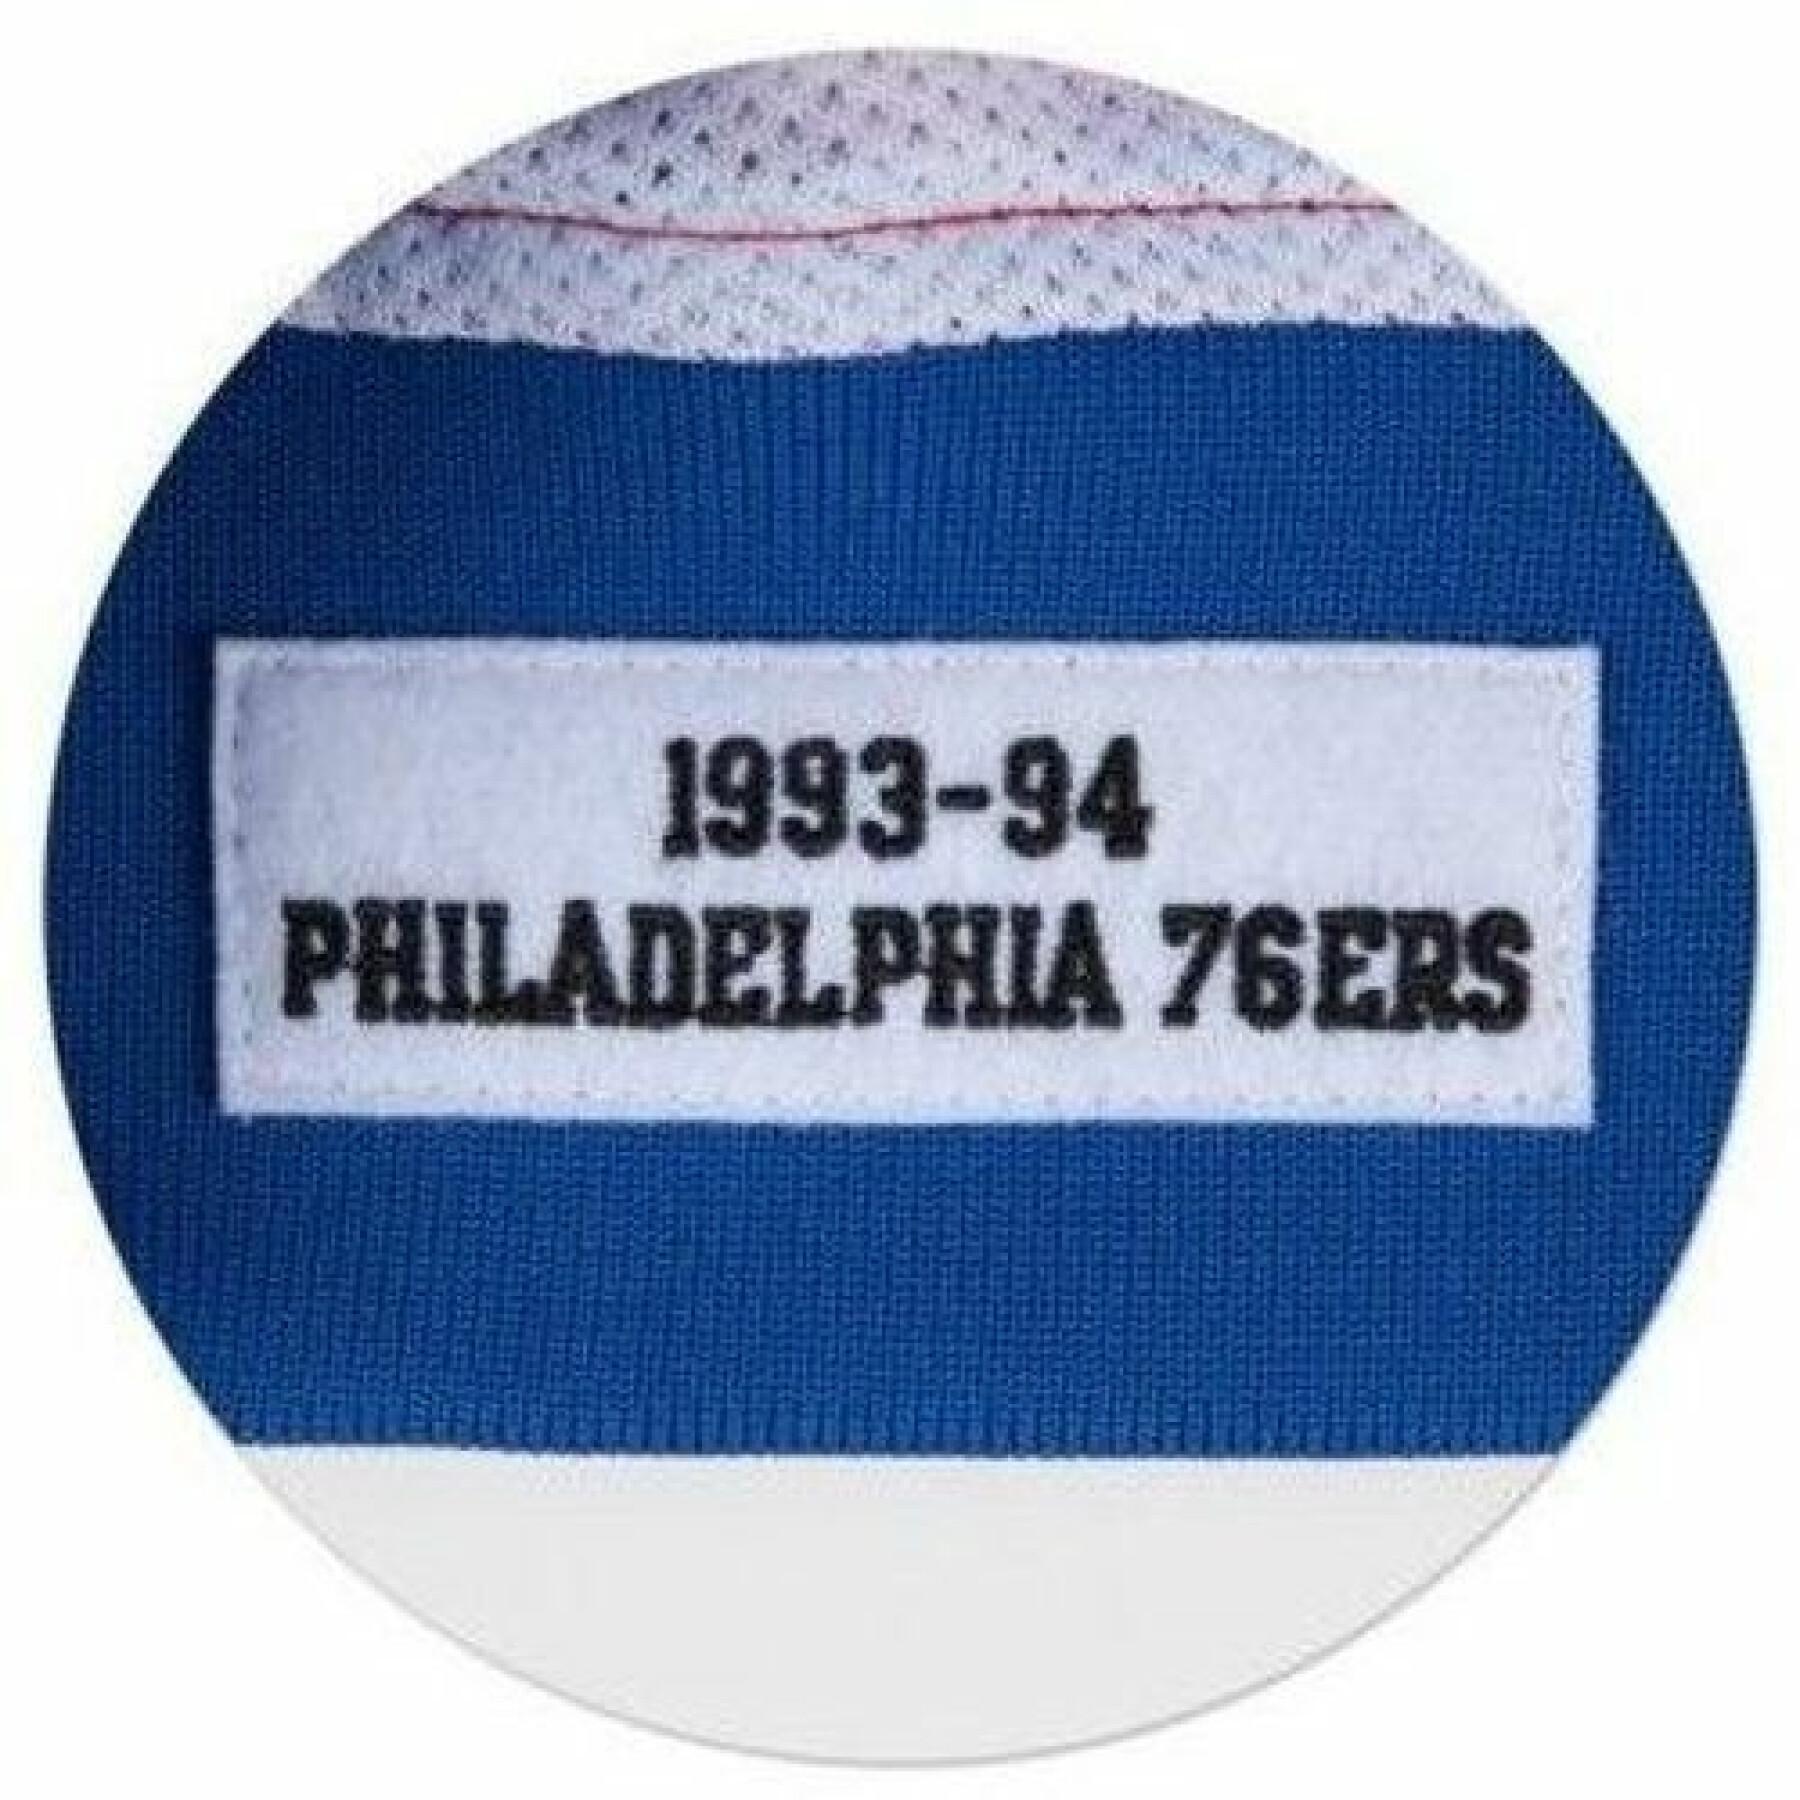 Casaco Philadelphia 76ers authentic